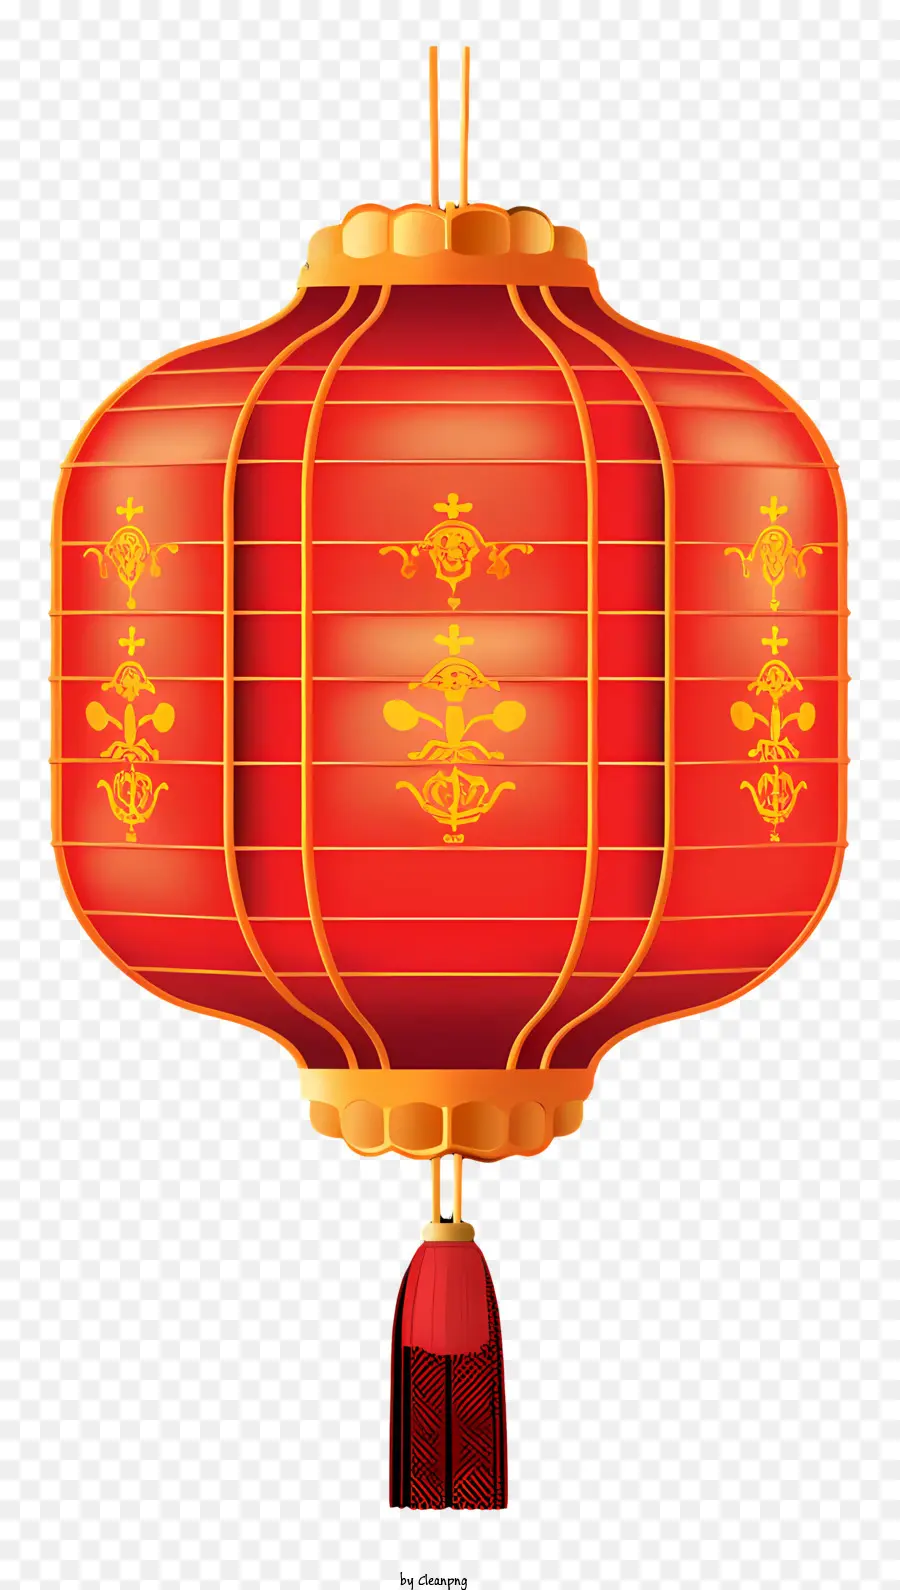 đèn lồng Trung Quốc - Đèn lồng Trung Quốc với các điểm nhấn màu đỏ và vàng